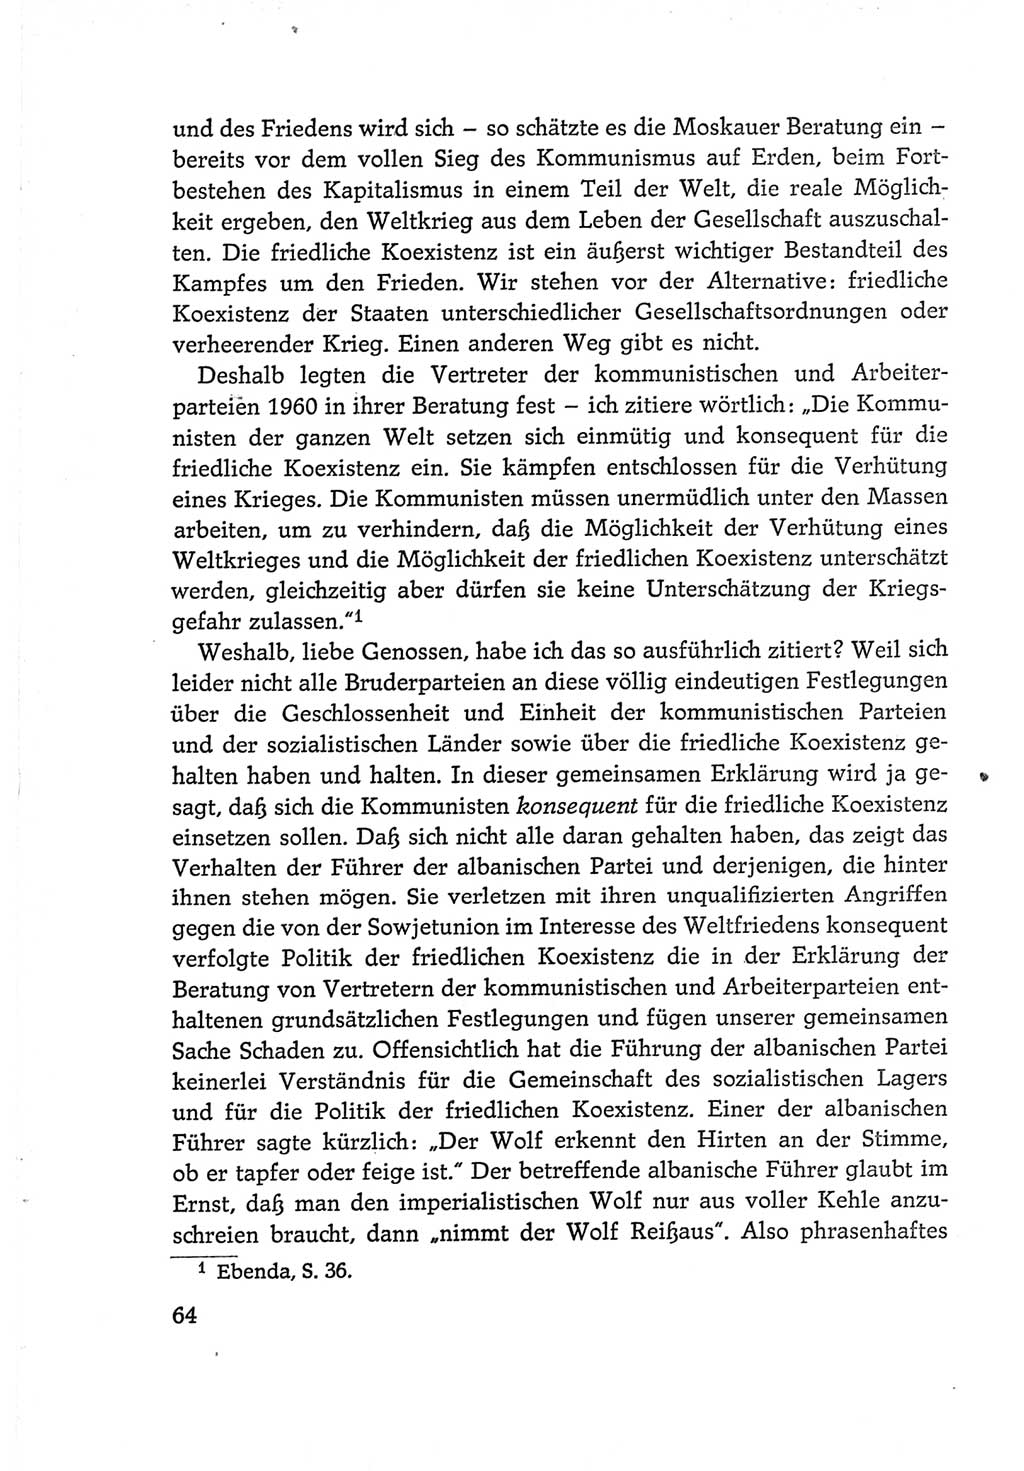 Protokoll der Verhandlungen des Ⅵ. Parteitages der Sozialistischen Einheitspartei Deutschlands (SED) [Deutsche Demokratische Republik (DDR)] 1963, Band Ⅰ, Seite 64 (Prot. Verh. Ⅵ. PT SED DDR 1963, Bd. Ⅰ, S. 64)